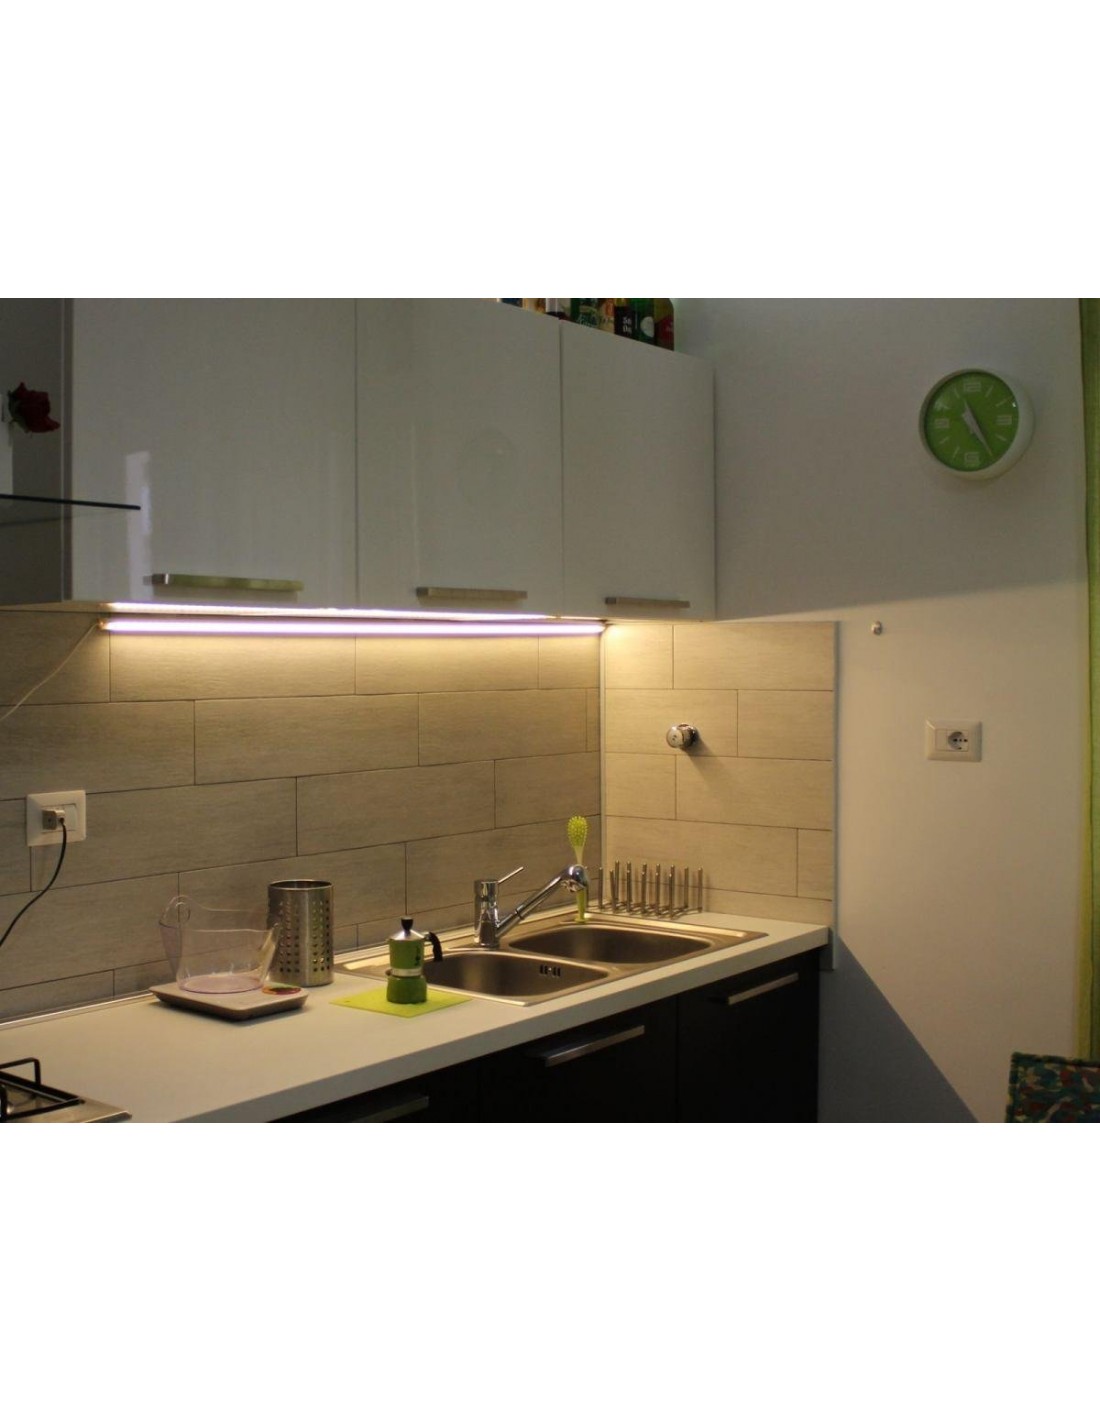 Illuminazione LED sotto pensile cucina. Realizzata della misura desiderata  con profilo a 45° …